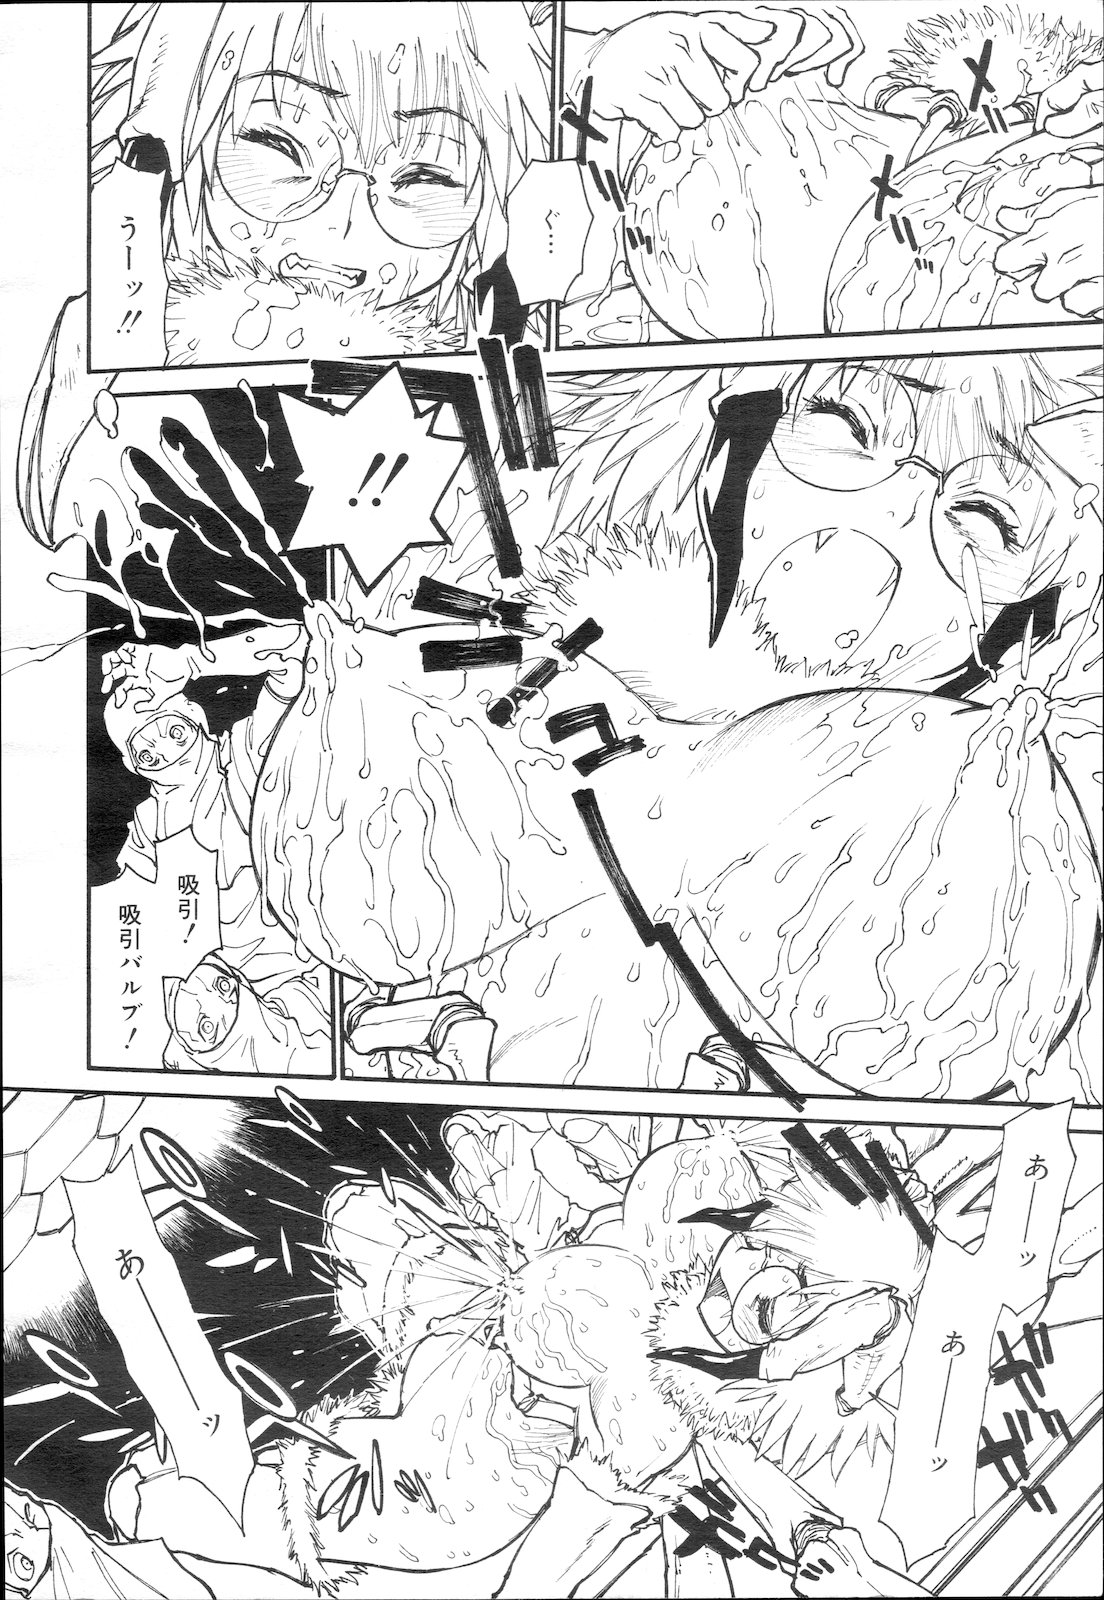 COMIC Mega GOLD Vol. 5 コミック メガGOLD Vol.5